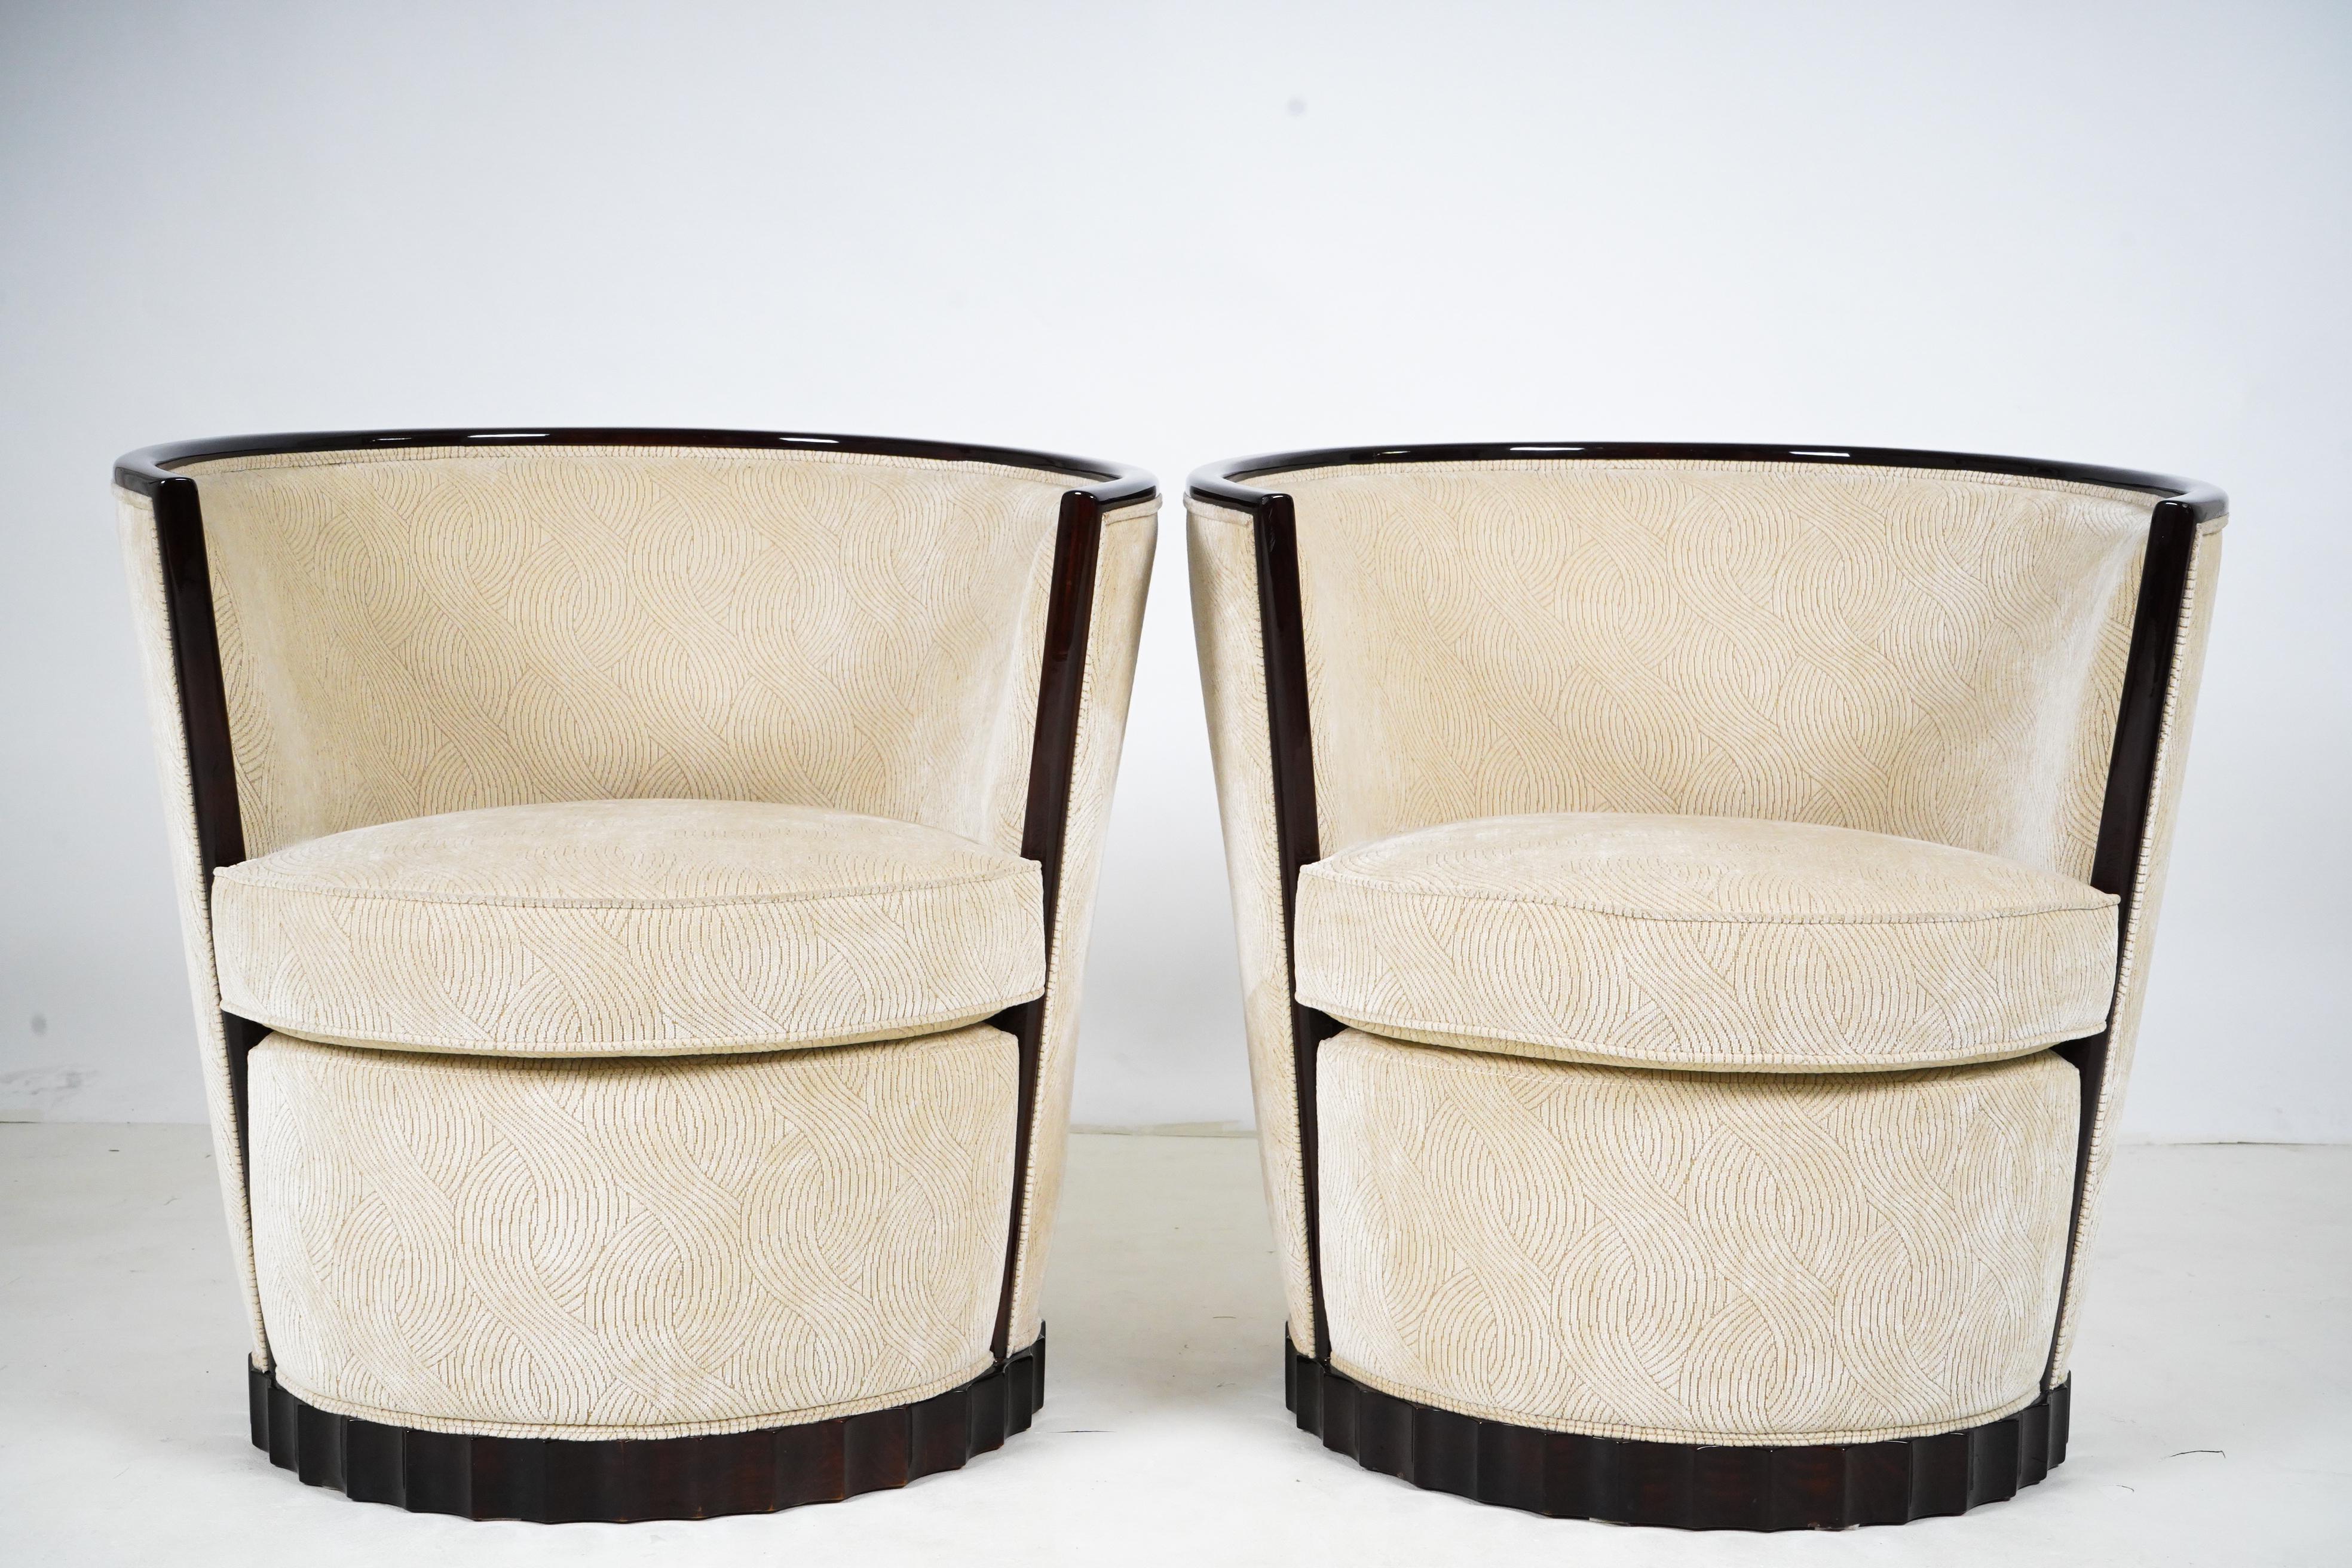 Ces fauteuils élégants sont basés sur un design Art déco français classique. Les fabricants de meubles hongrois ont prospéré pendant l'entre-deux-guerres, perfectionnant les designs épurés de l'Art déco, qui provenaient pour la plupart de France.